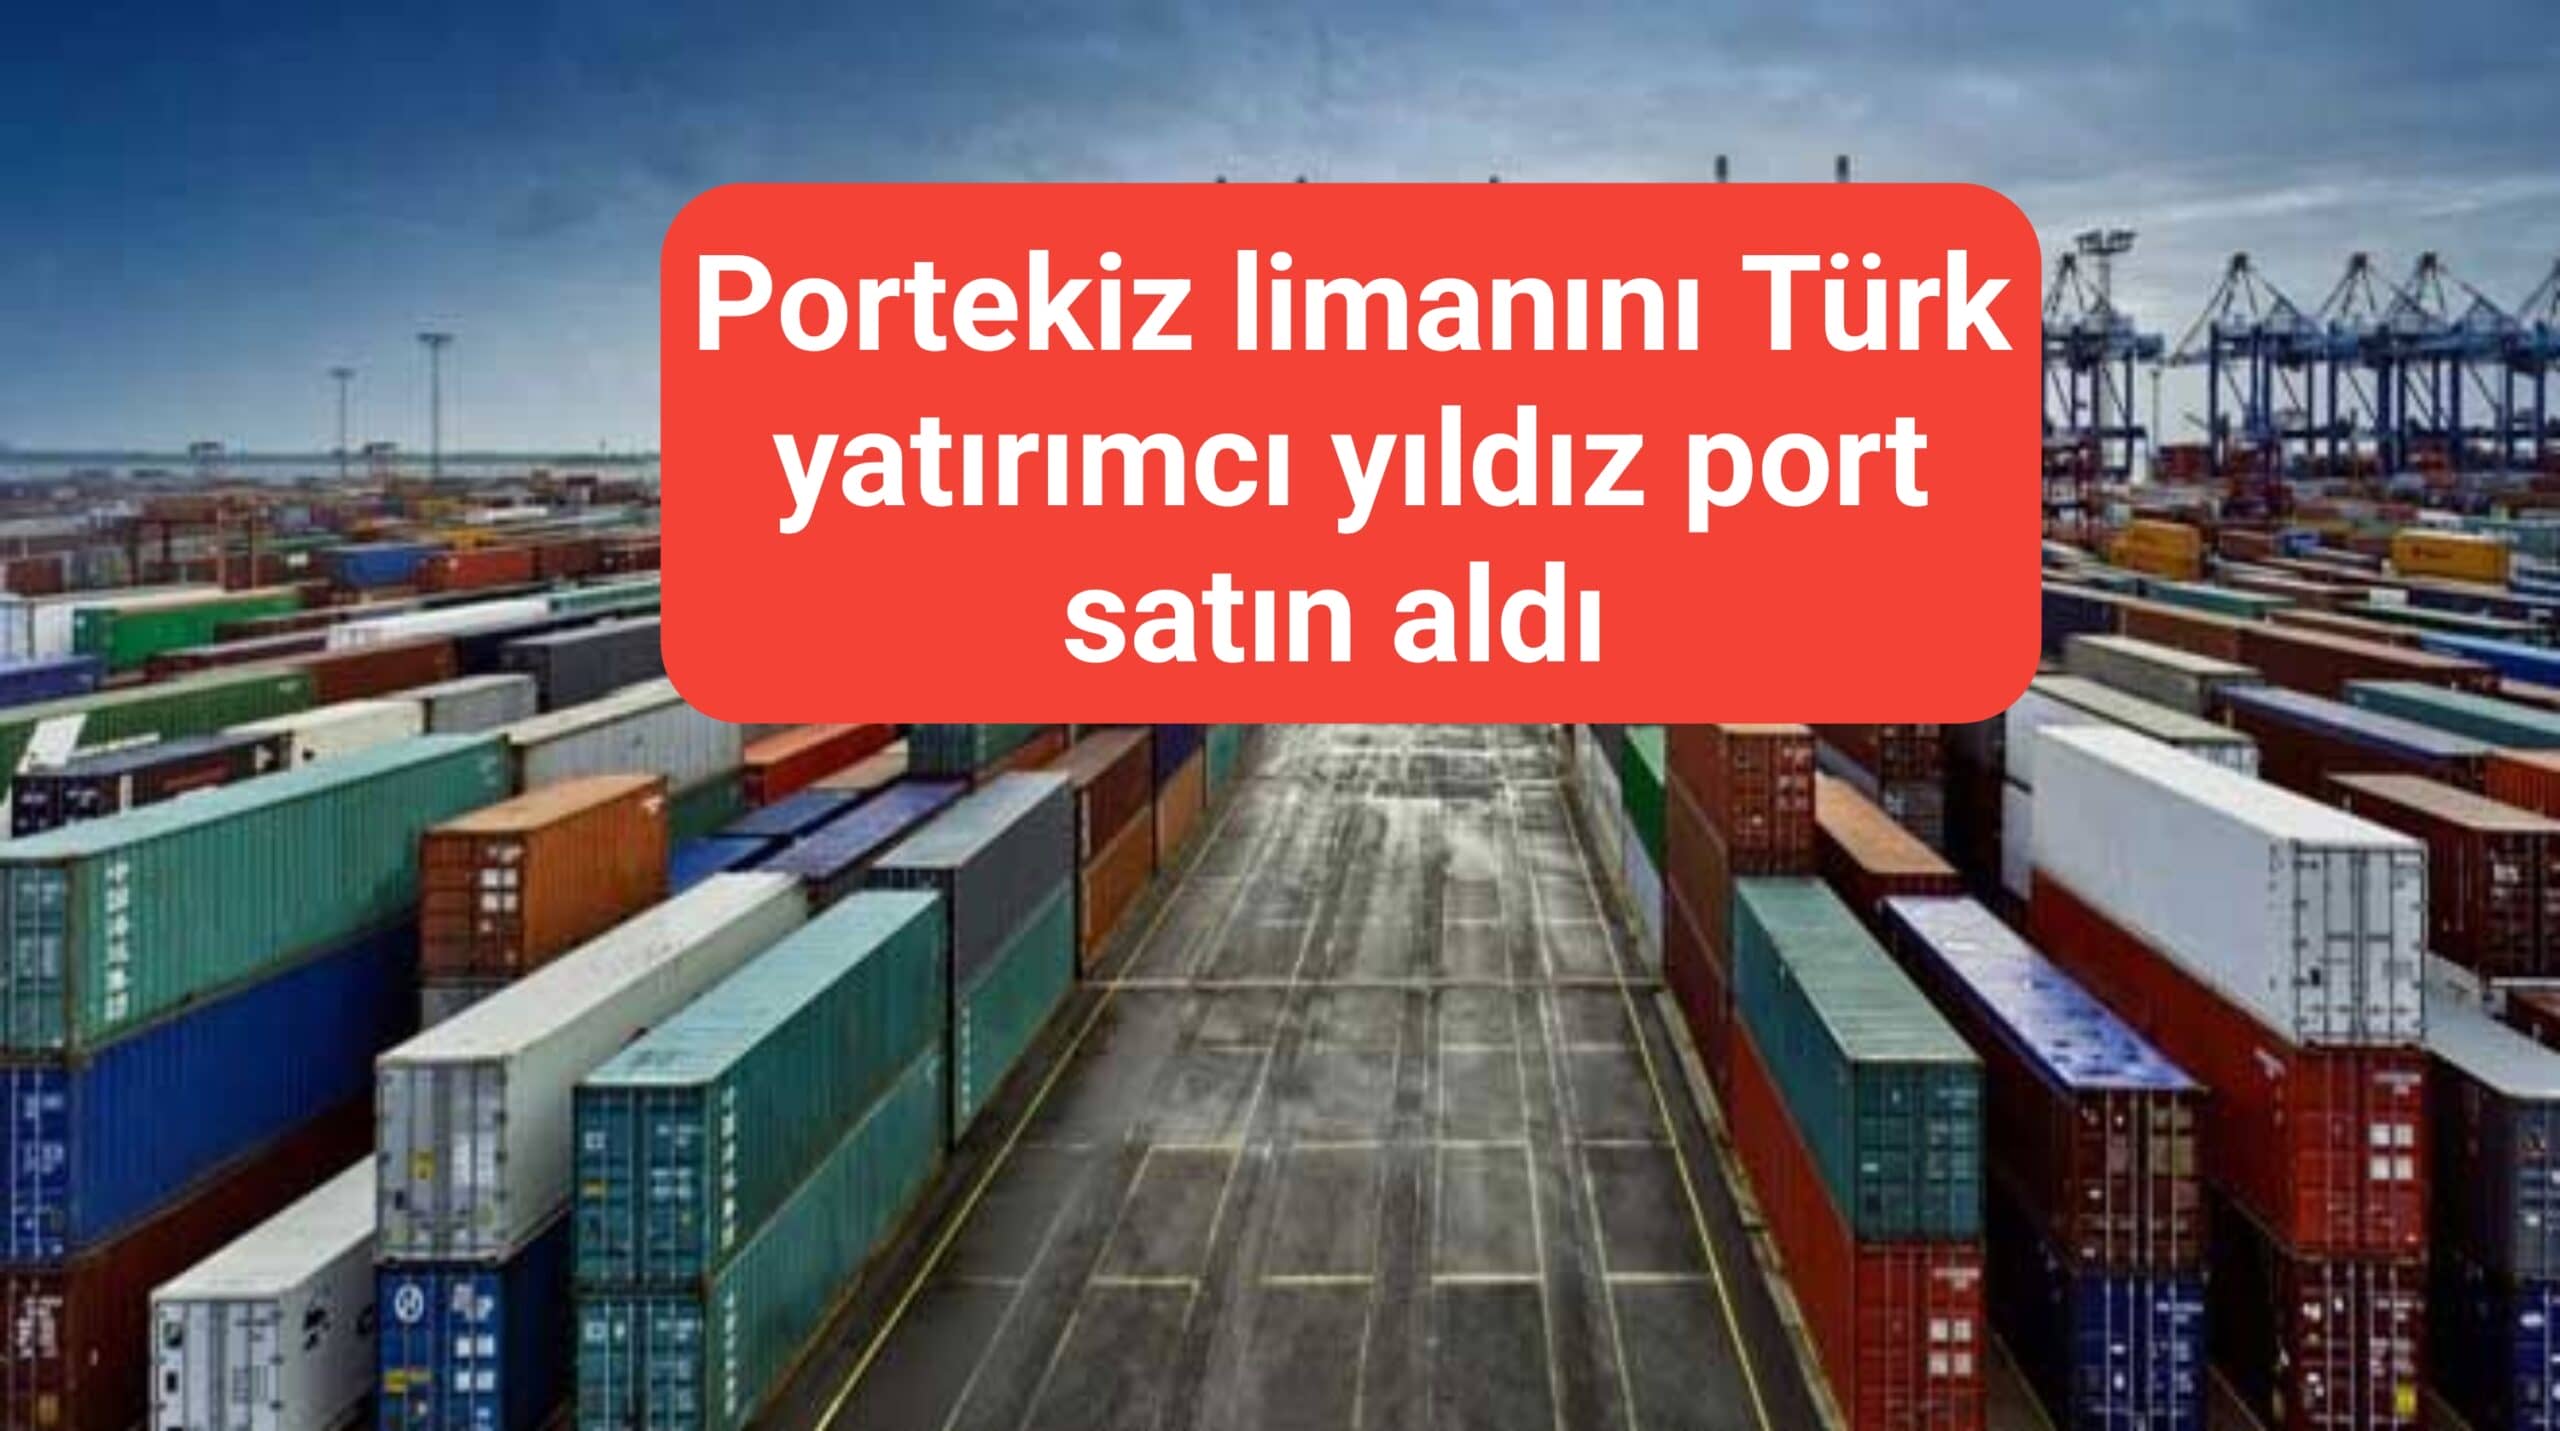 Portekiz limanlarını Türk yatırımcı yıldız port satın aldı